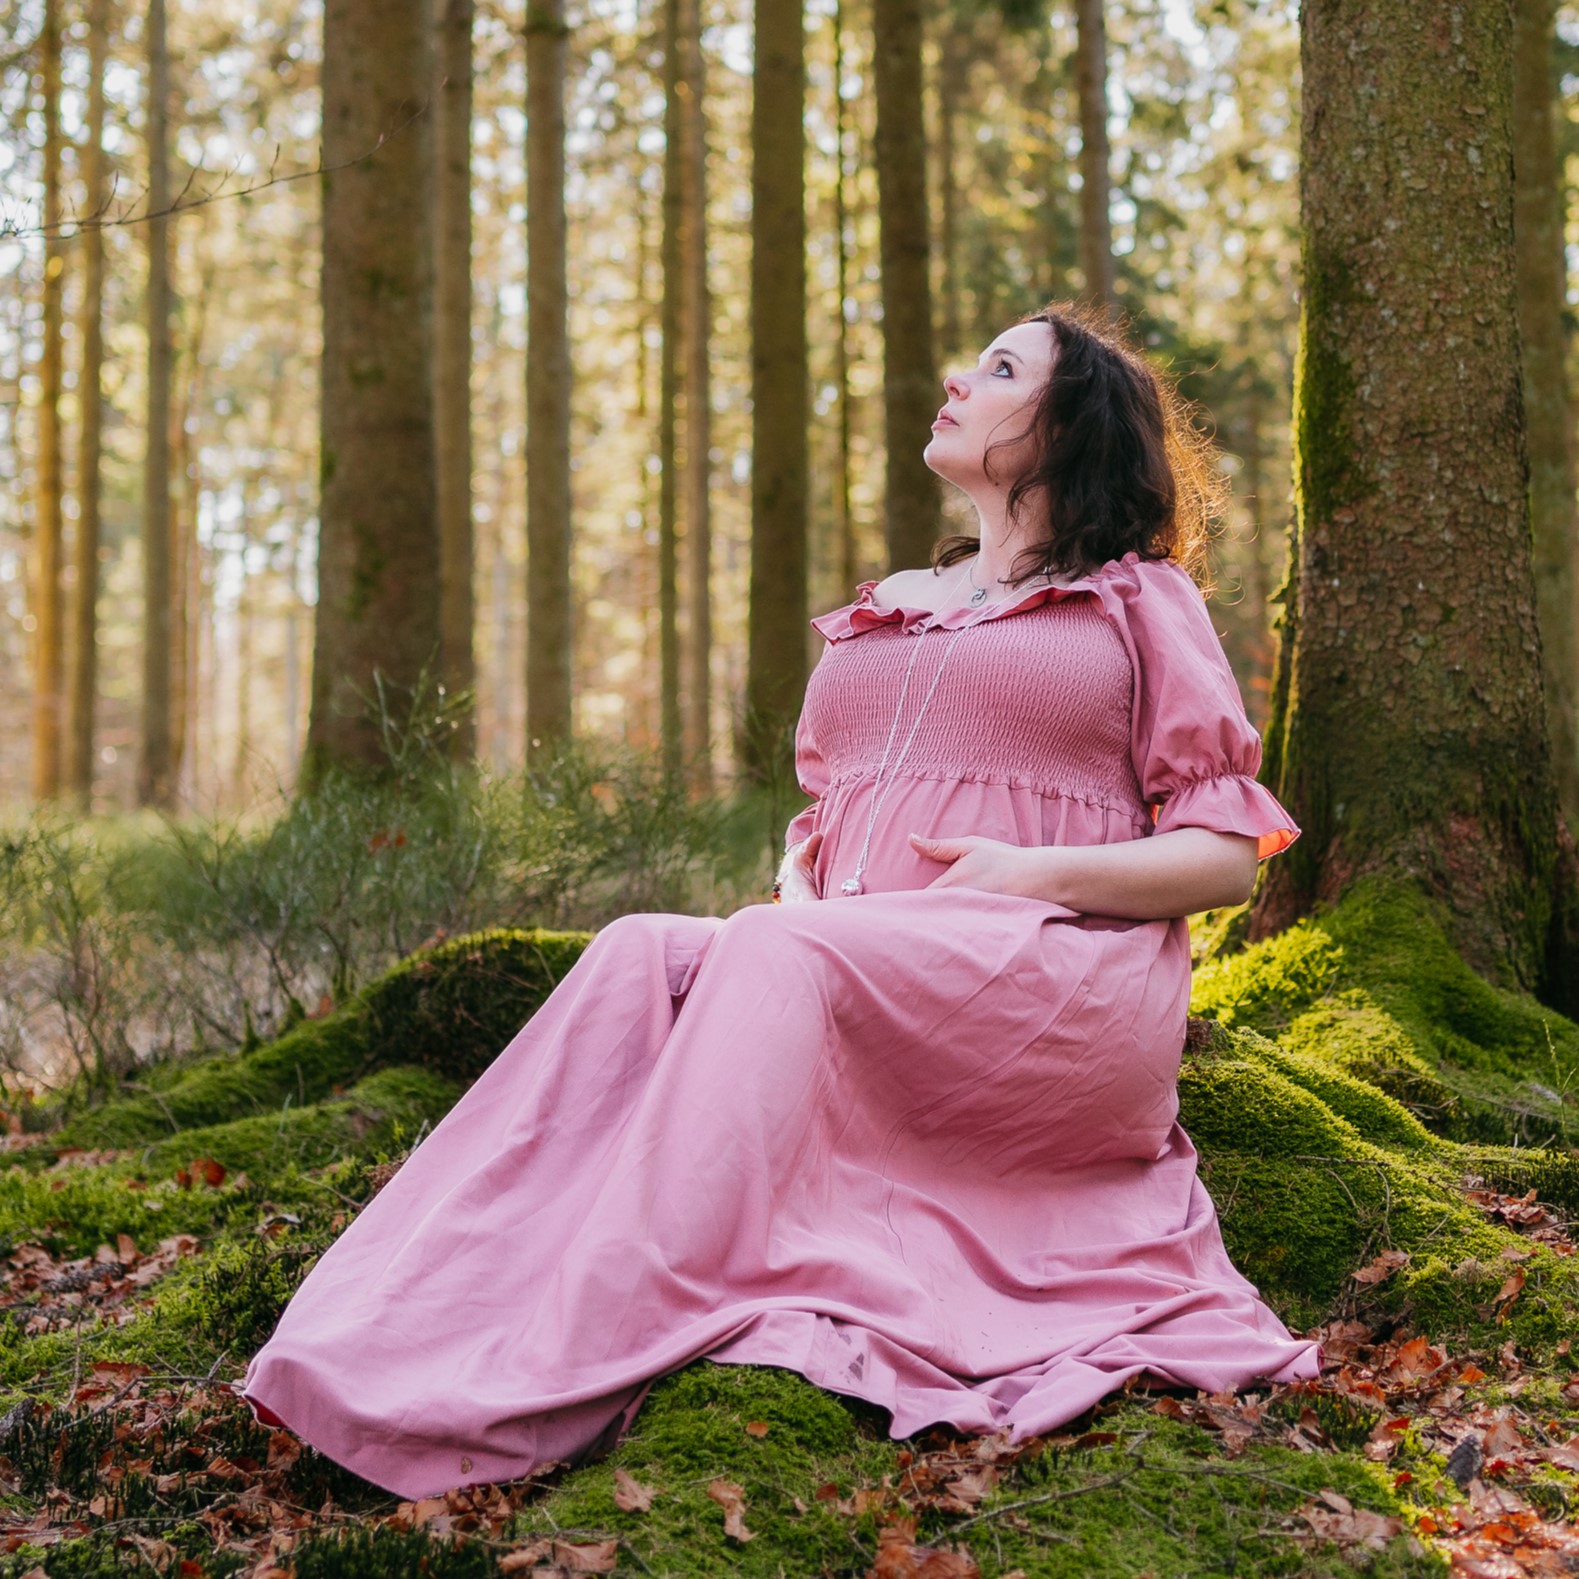 Une femme enceinte vêtue d'une robe rose assise sur de la mousse dans une forêt.